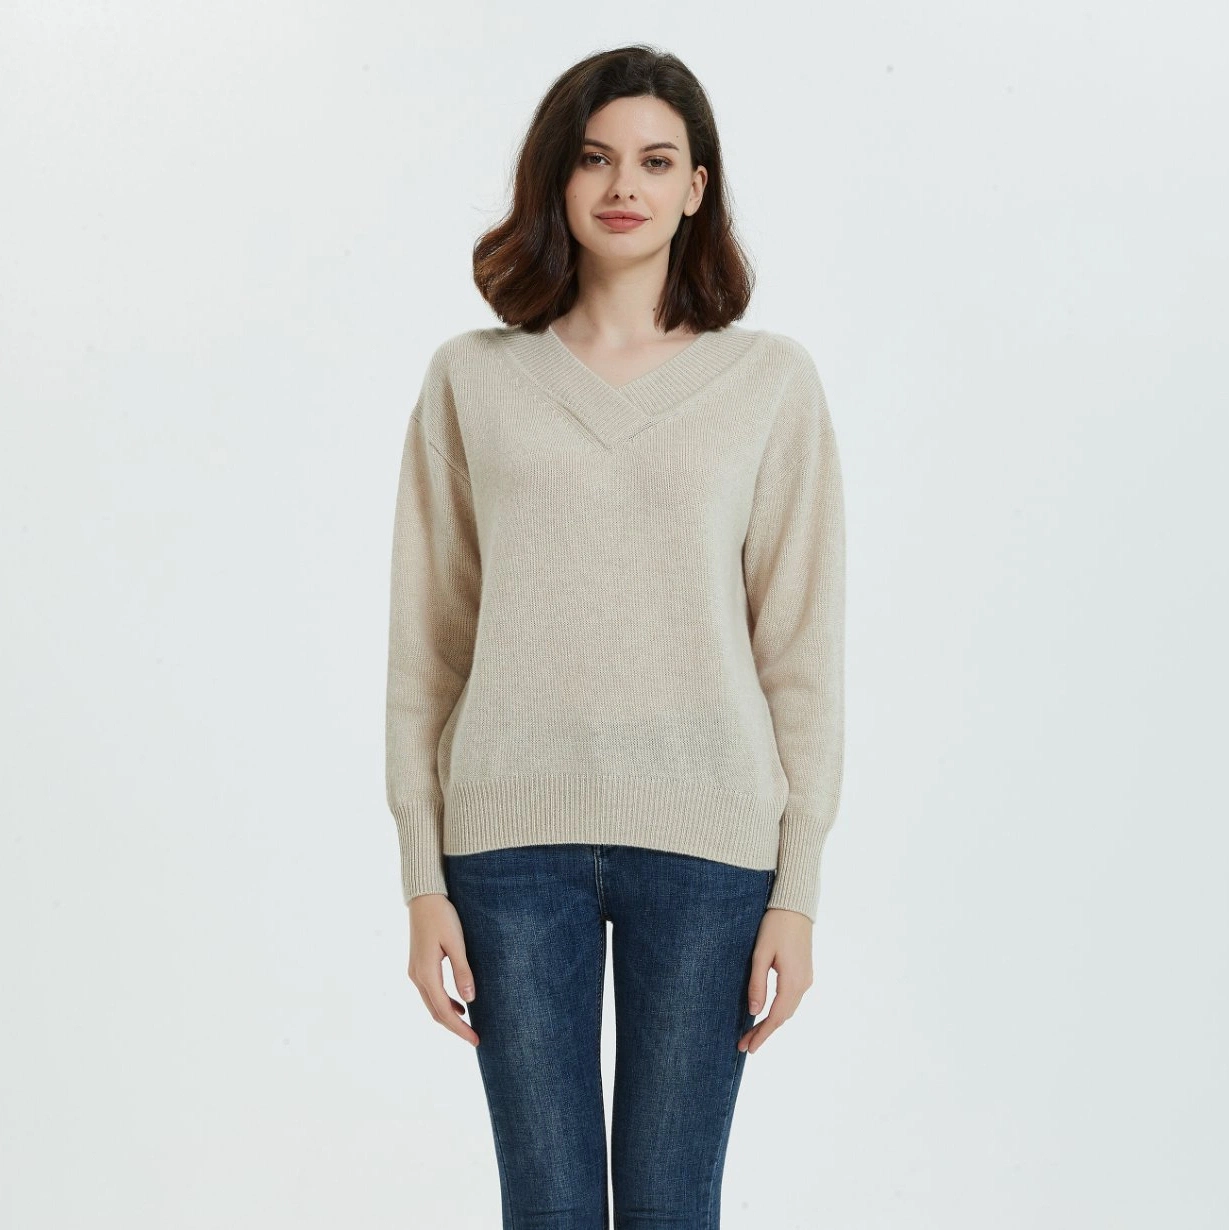 Классический стили 100% кашемира дамы моды V-образный вырез горловины Pullover свитер